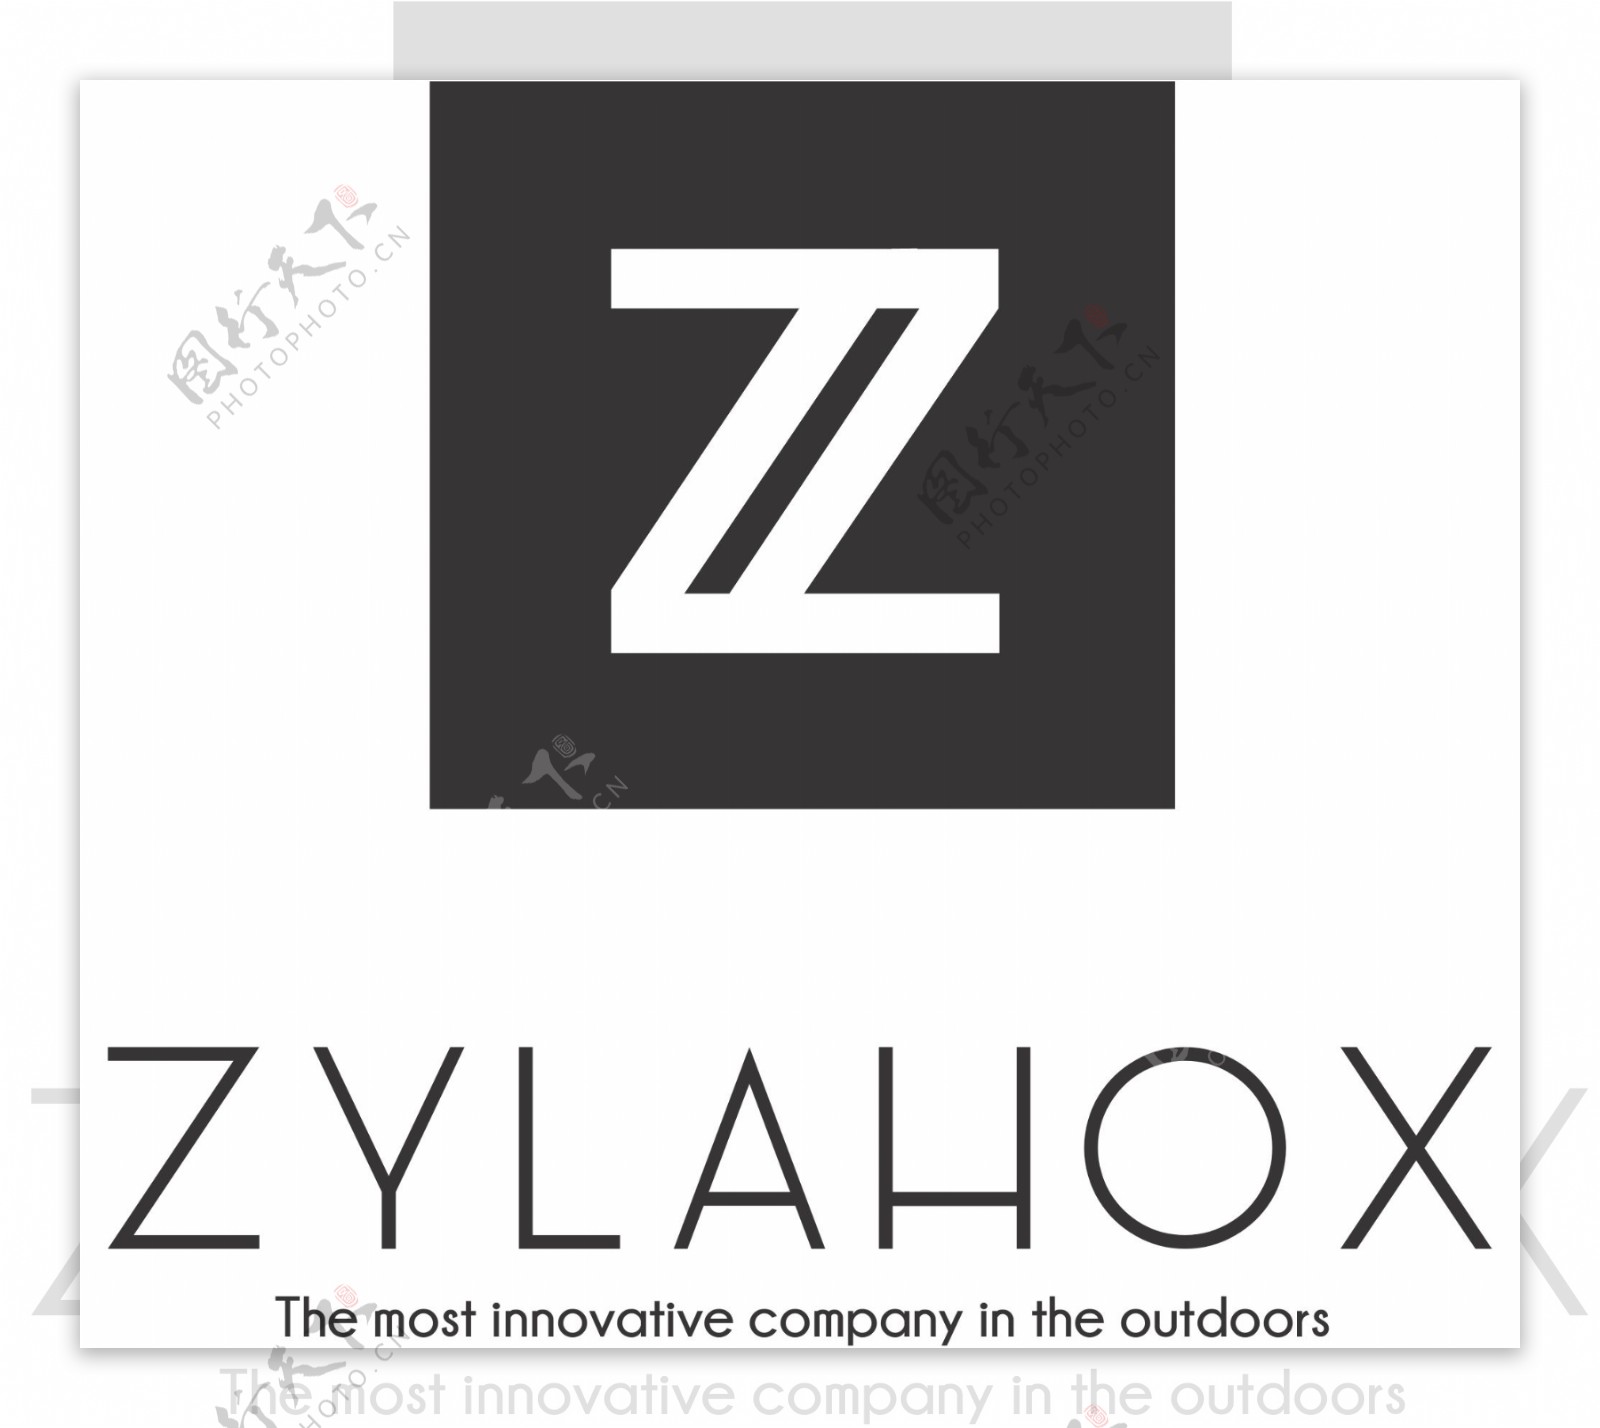 创意矢量logo标志Z元素